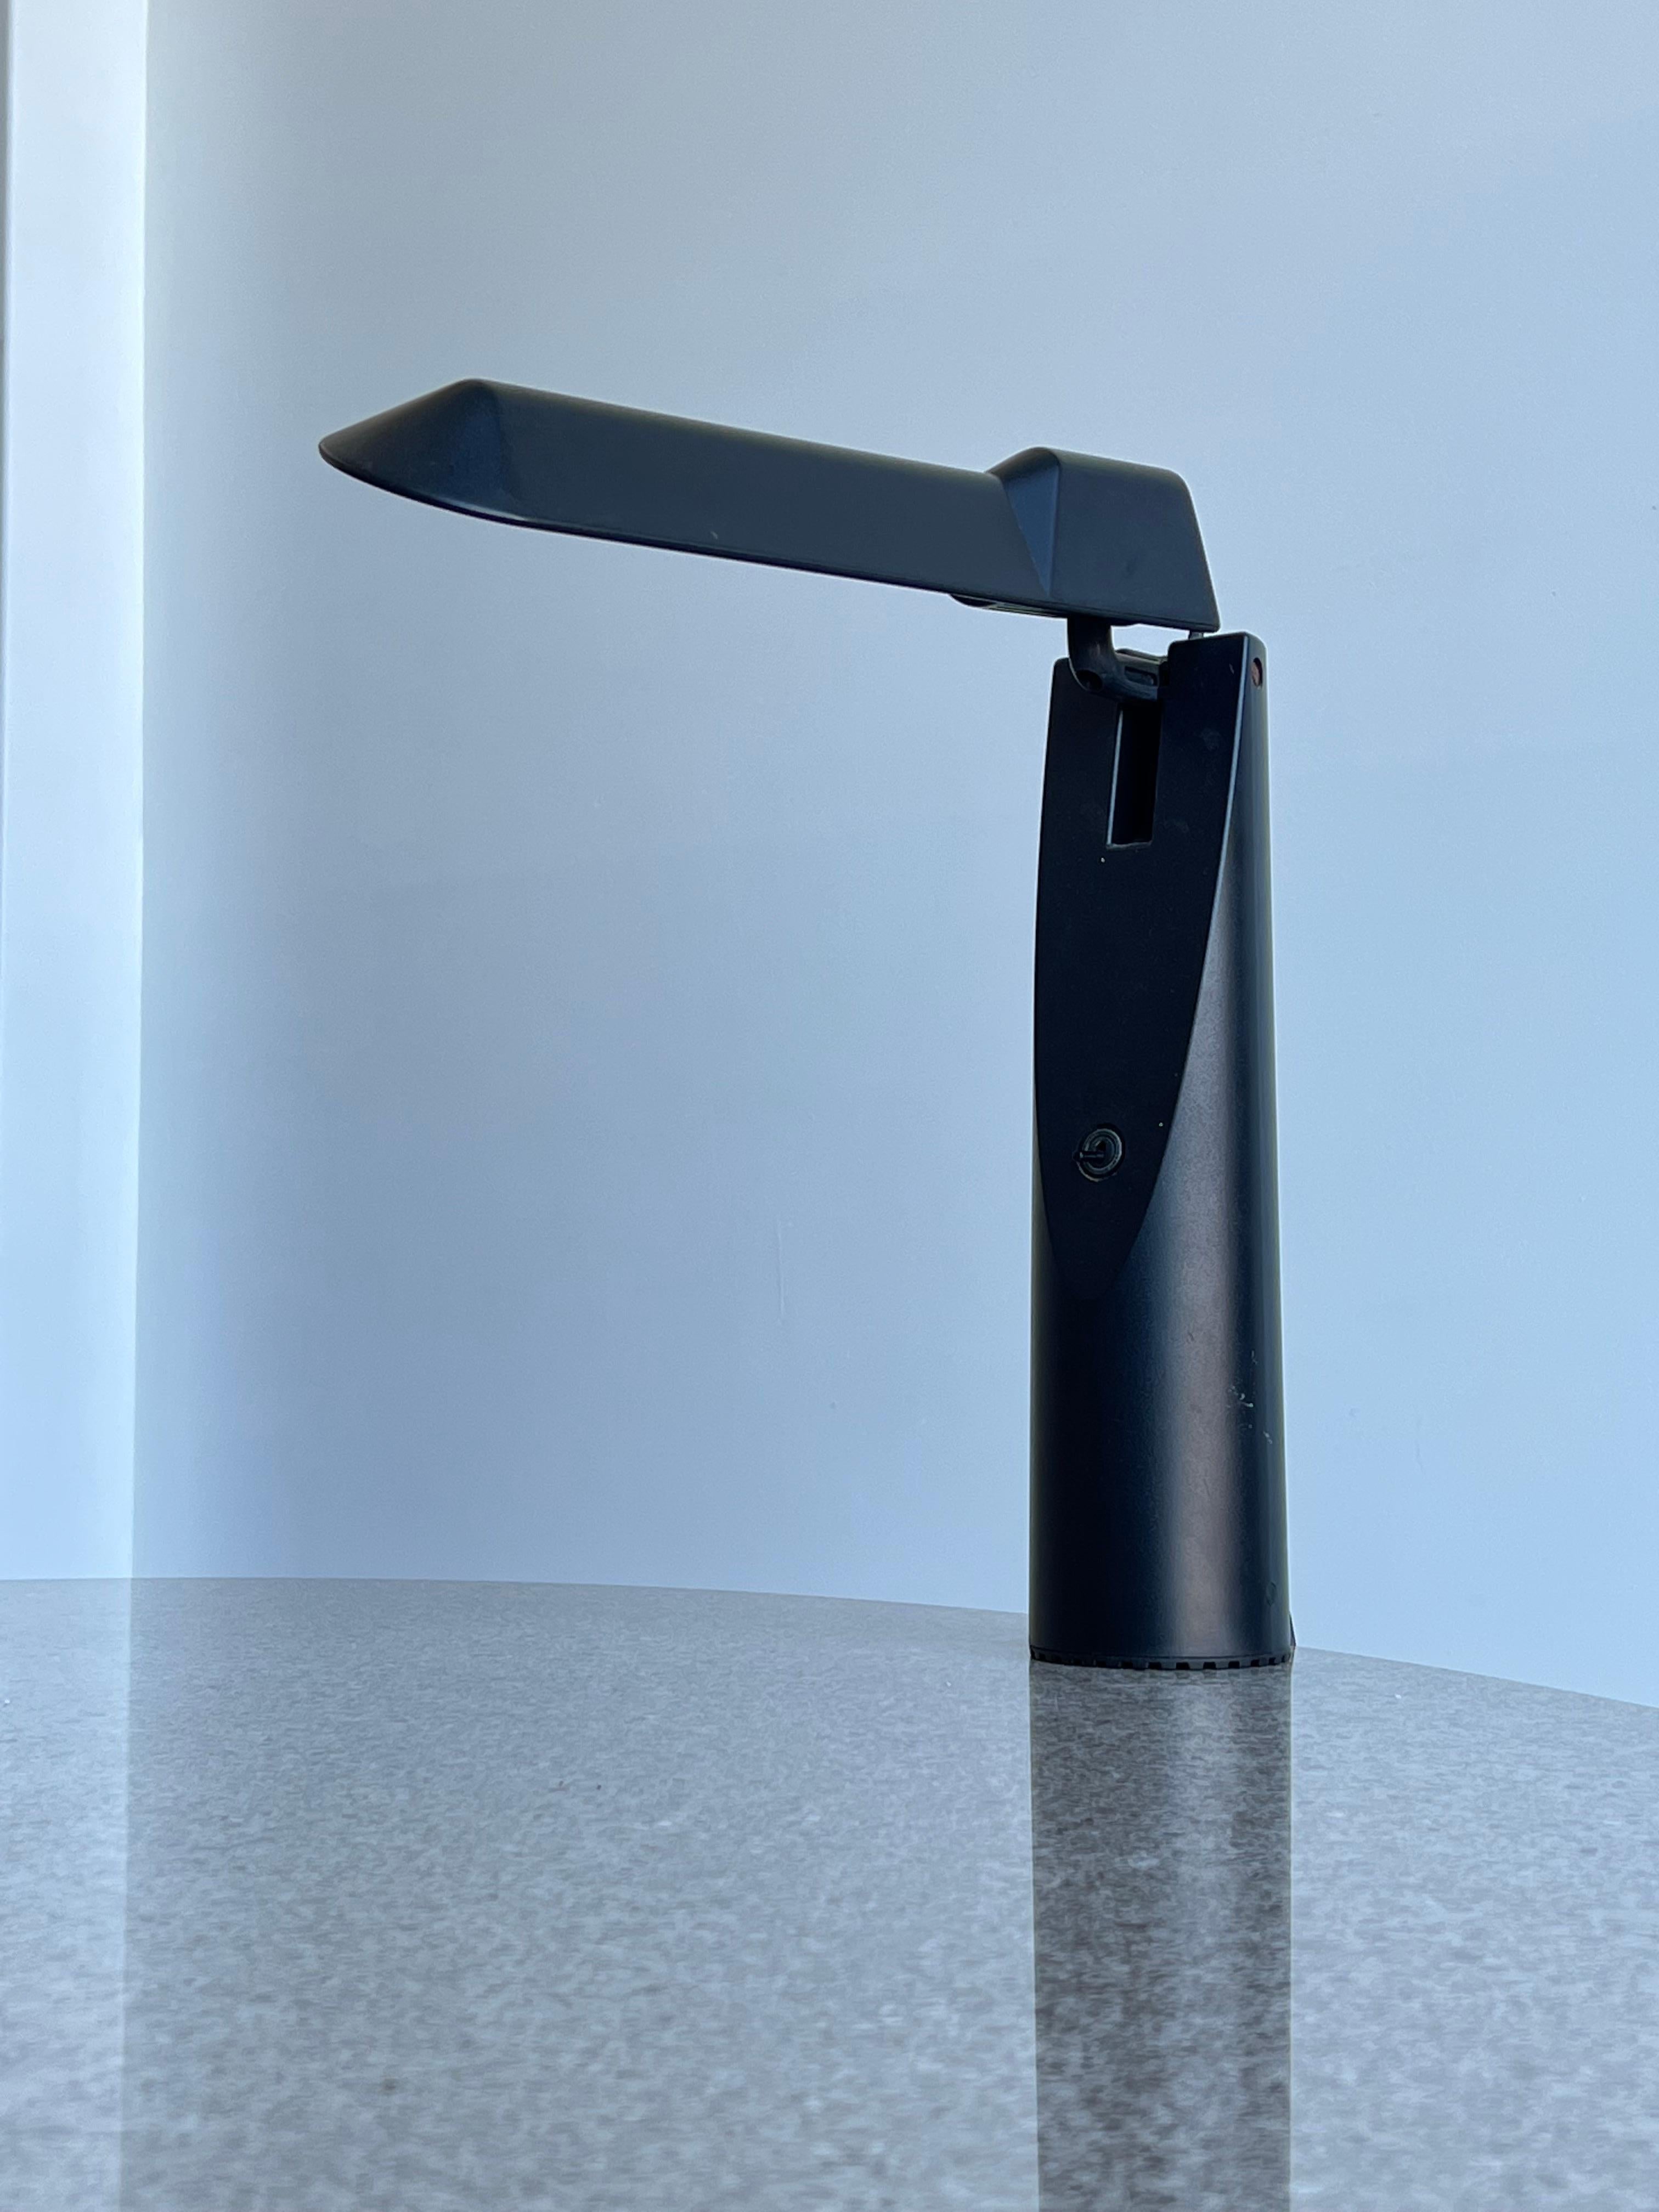 Lampe de table Picchio du designer japonais Isao Hosoe et fabriquée par Luxo Italiana en 1984.
Lampe de table élégante et fonctionnelle fabriquée en ABS. La partie supérieure de la lampe Picchio est entièrement réglable, elle comprend un réflecteur